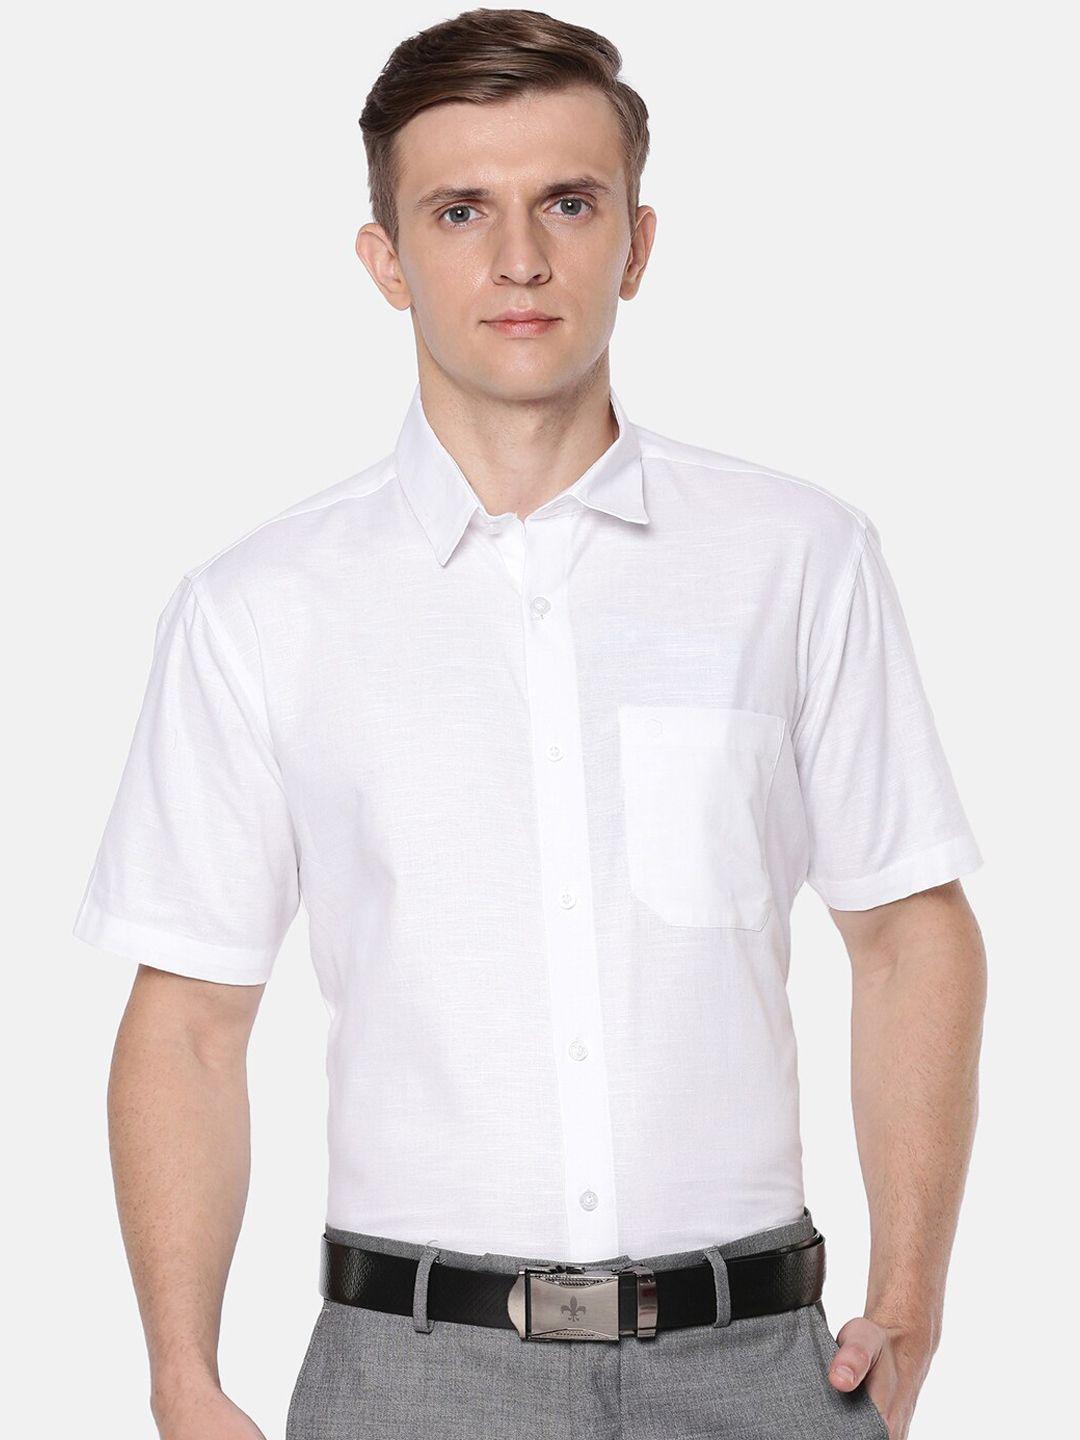 jansons men white short sleeves formal shirt